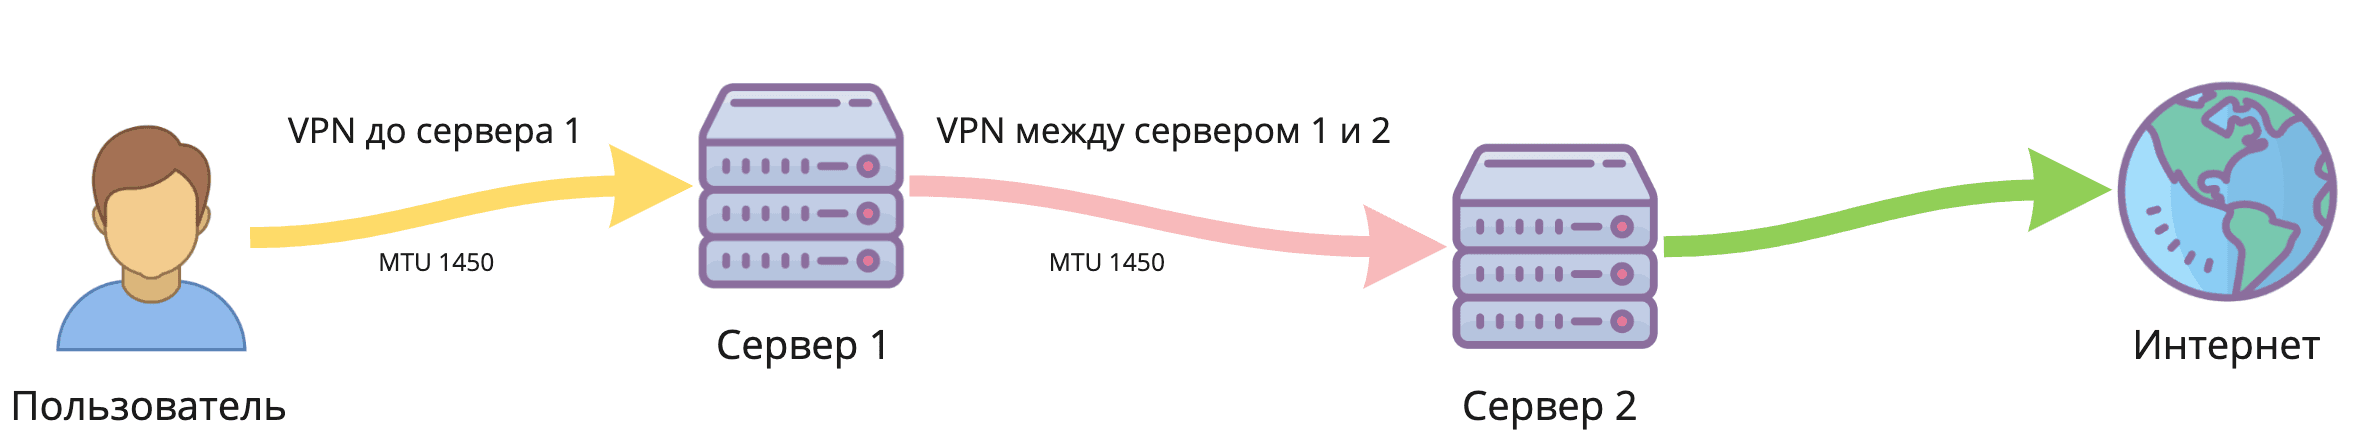 Двойной VPN в один клик. Как легко разделить IP-адрес точки входа и выхода - 2